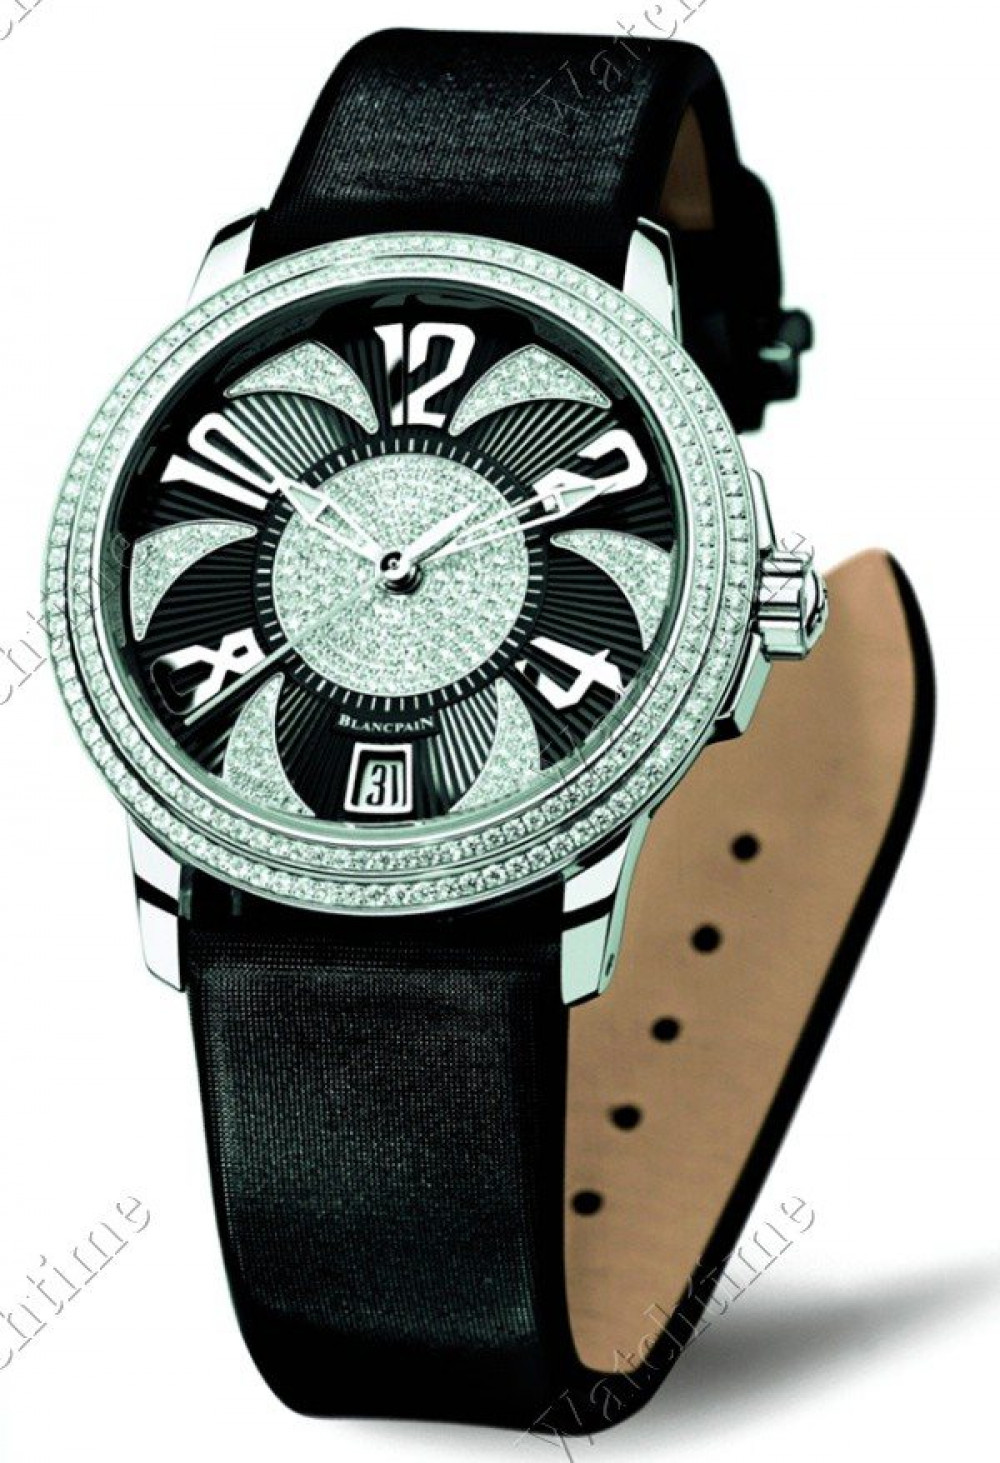 Zegarek firmy Blancpain, model Ultra-plate Lotus